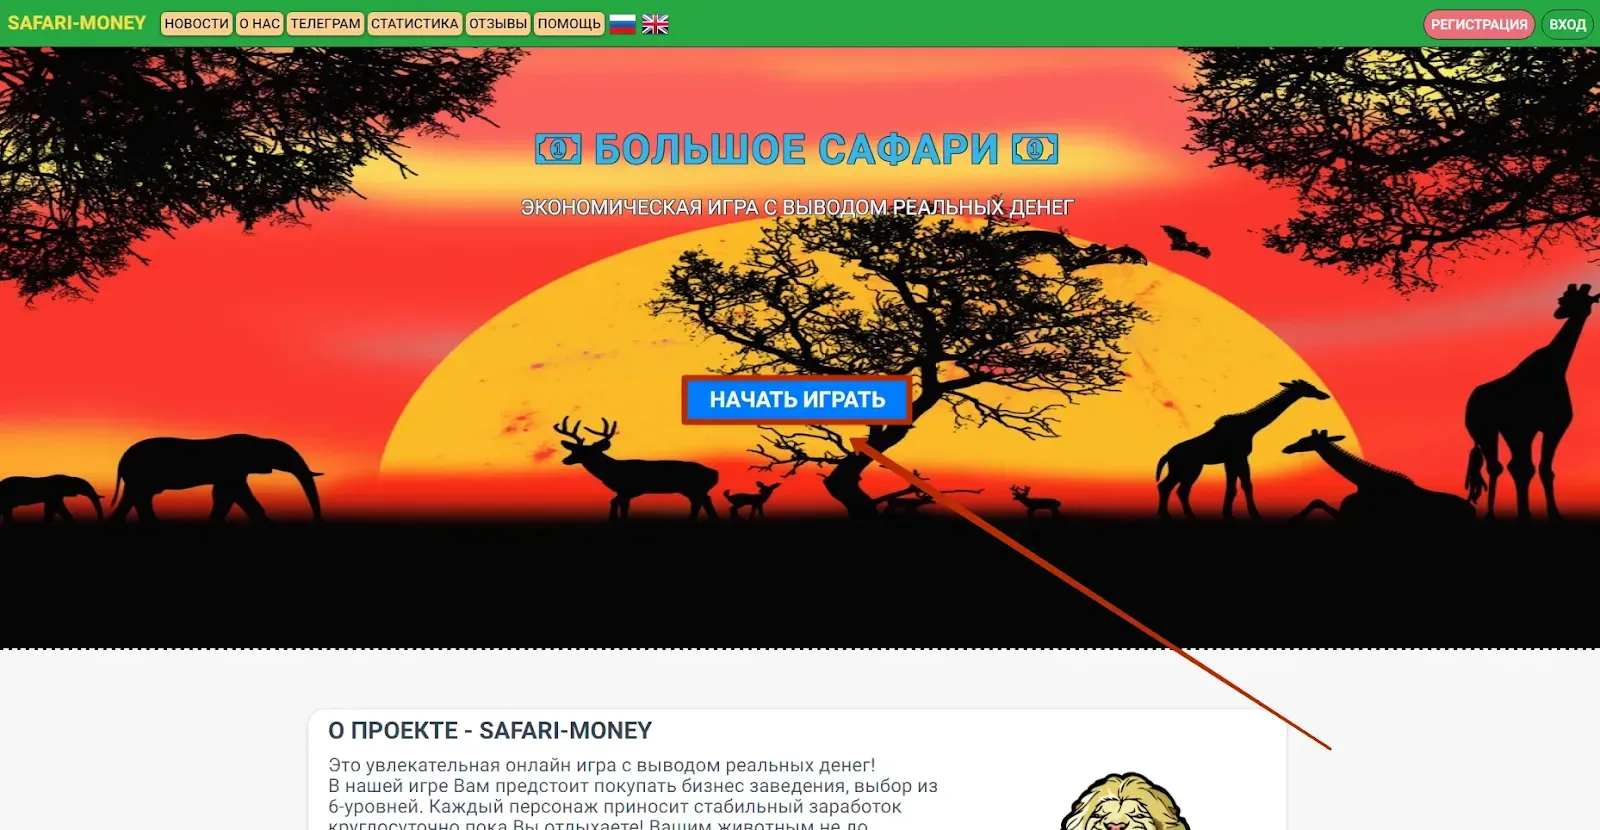 Регистрация в Safari-Money